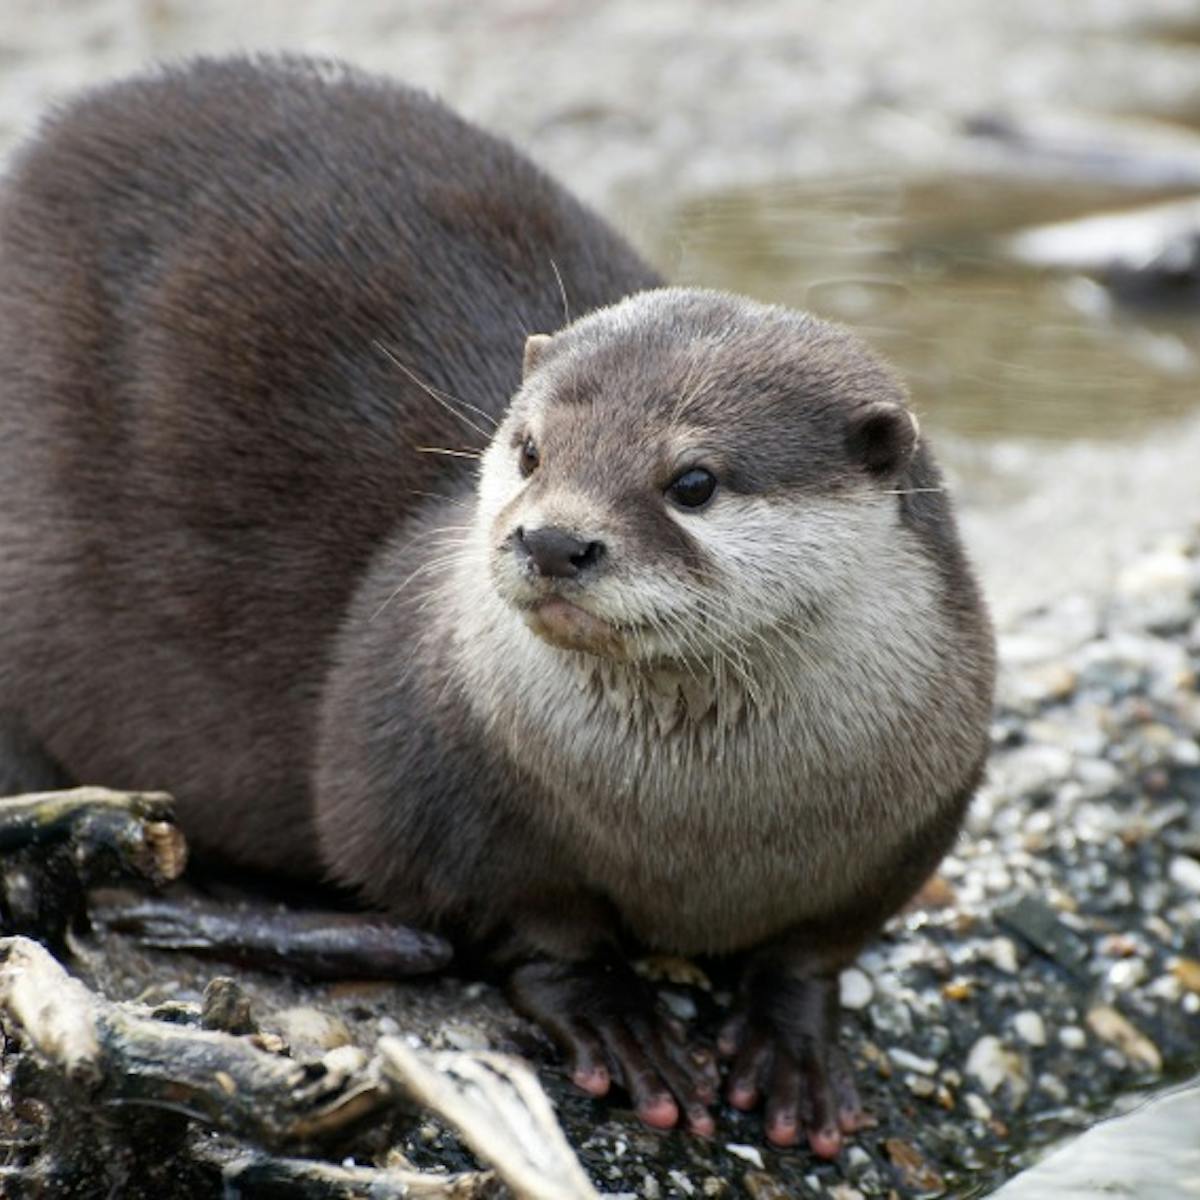 river otter on shore